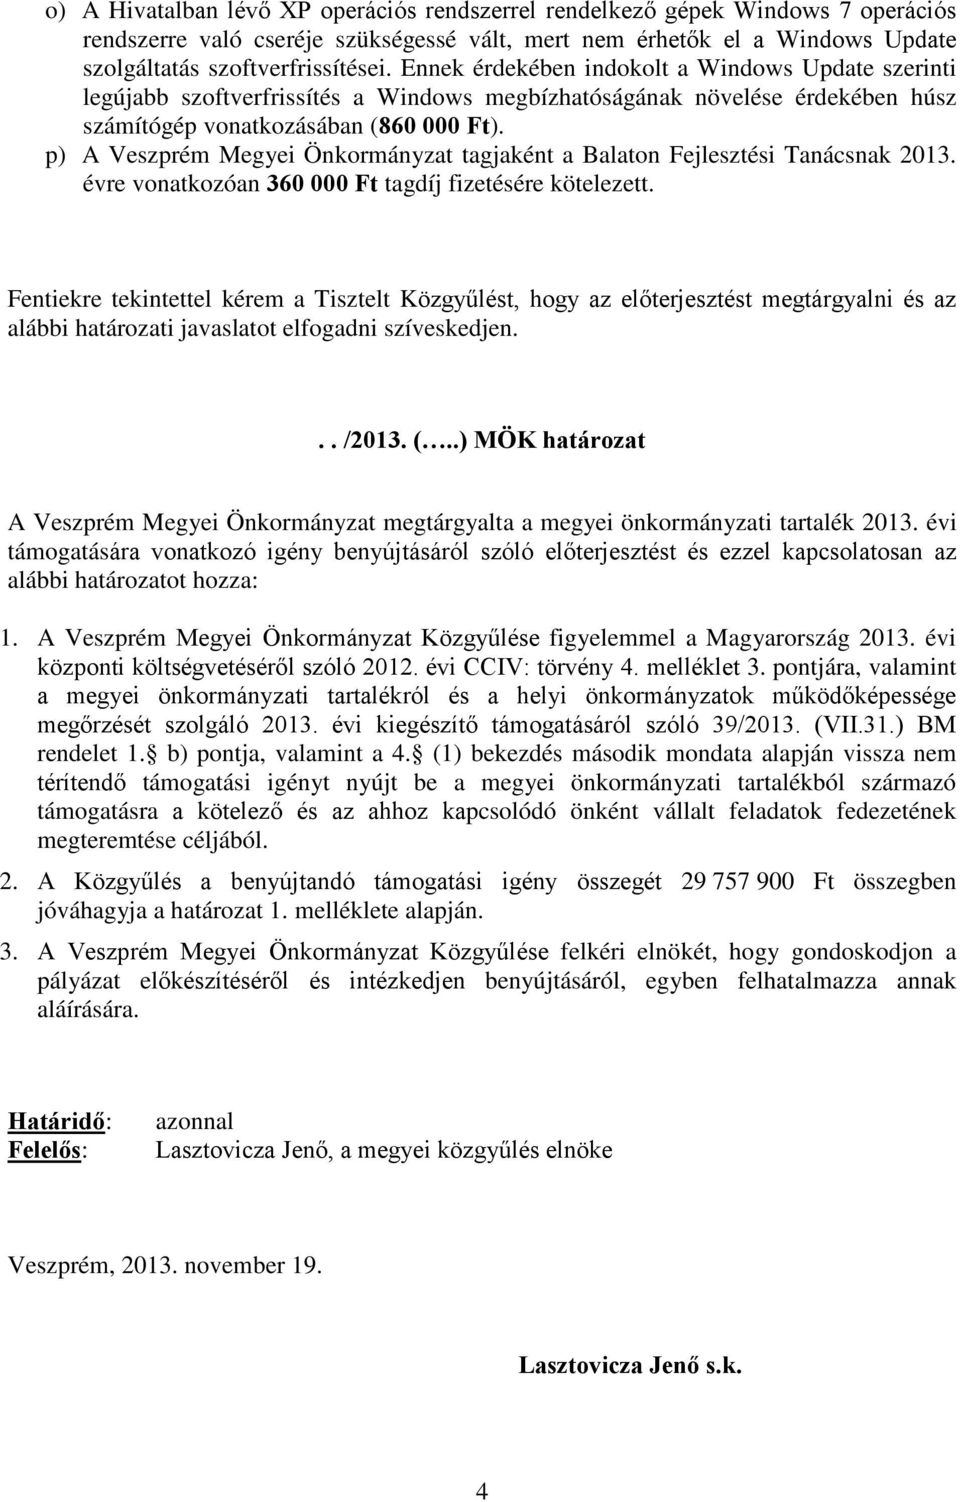 p) A Veszprém Megyei Önkormányzat tagjaként a Balaton Fejlesztési Tanácsnak 2013. évre vonatkozóan 360 000 Ft tagdíj fizetésére kötelezett.